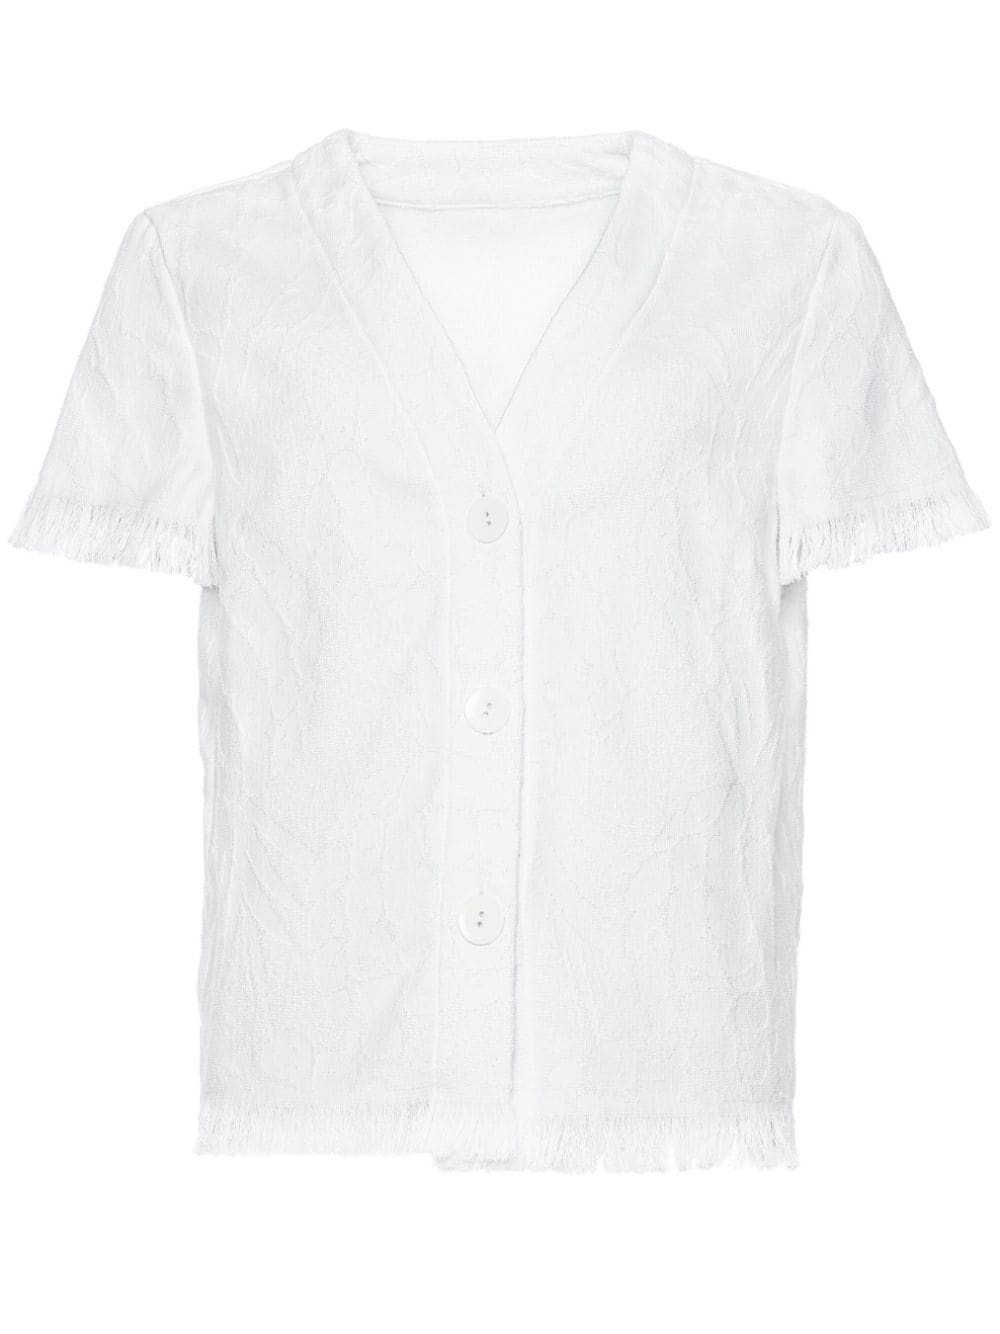 ERES Nectar terry-cloth shirt - White von ERES